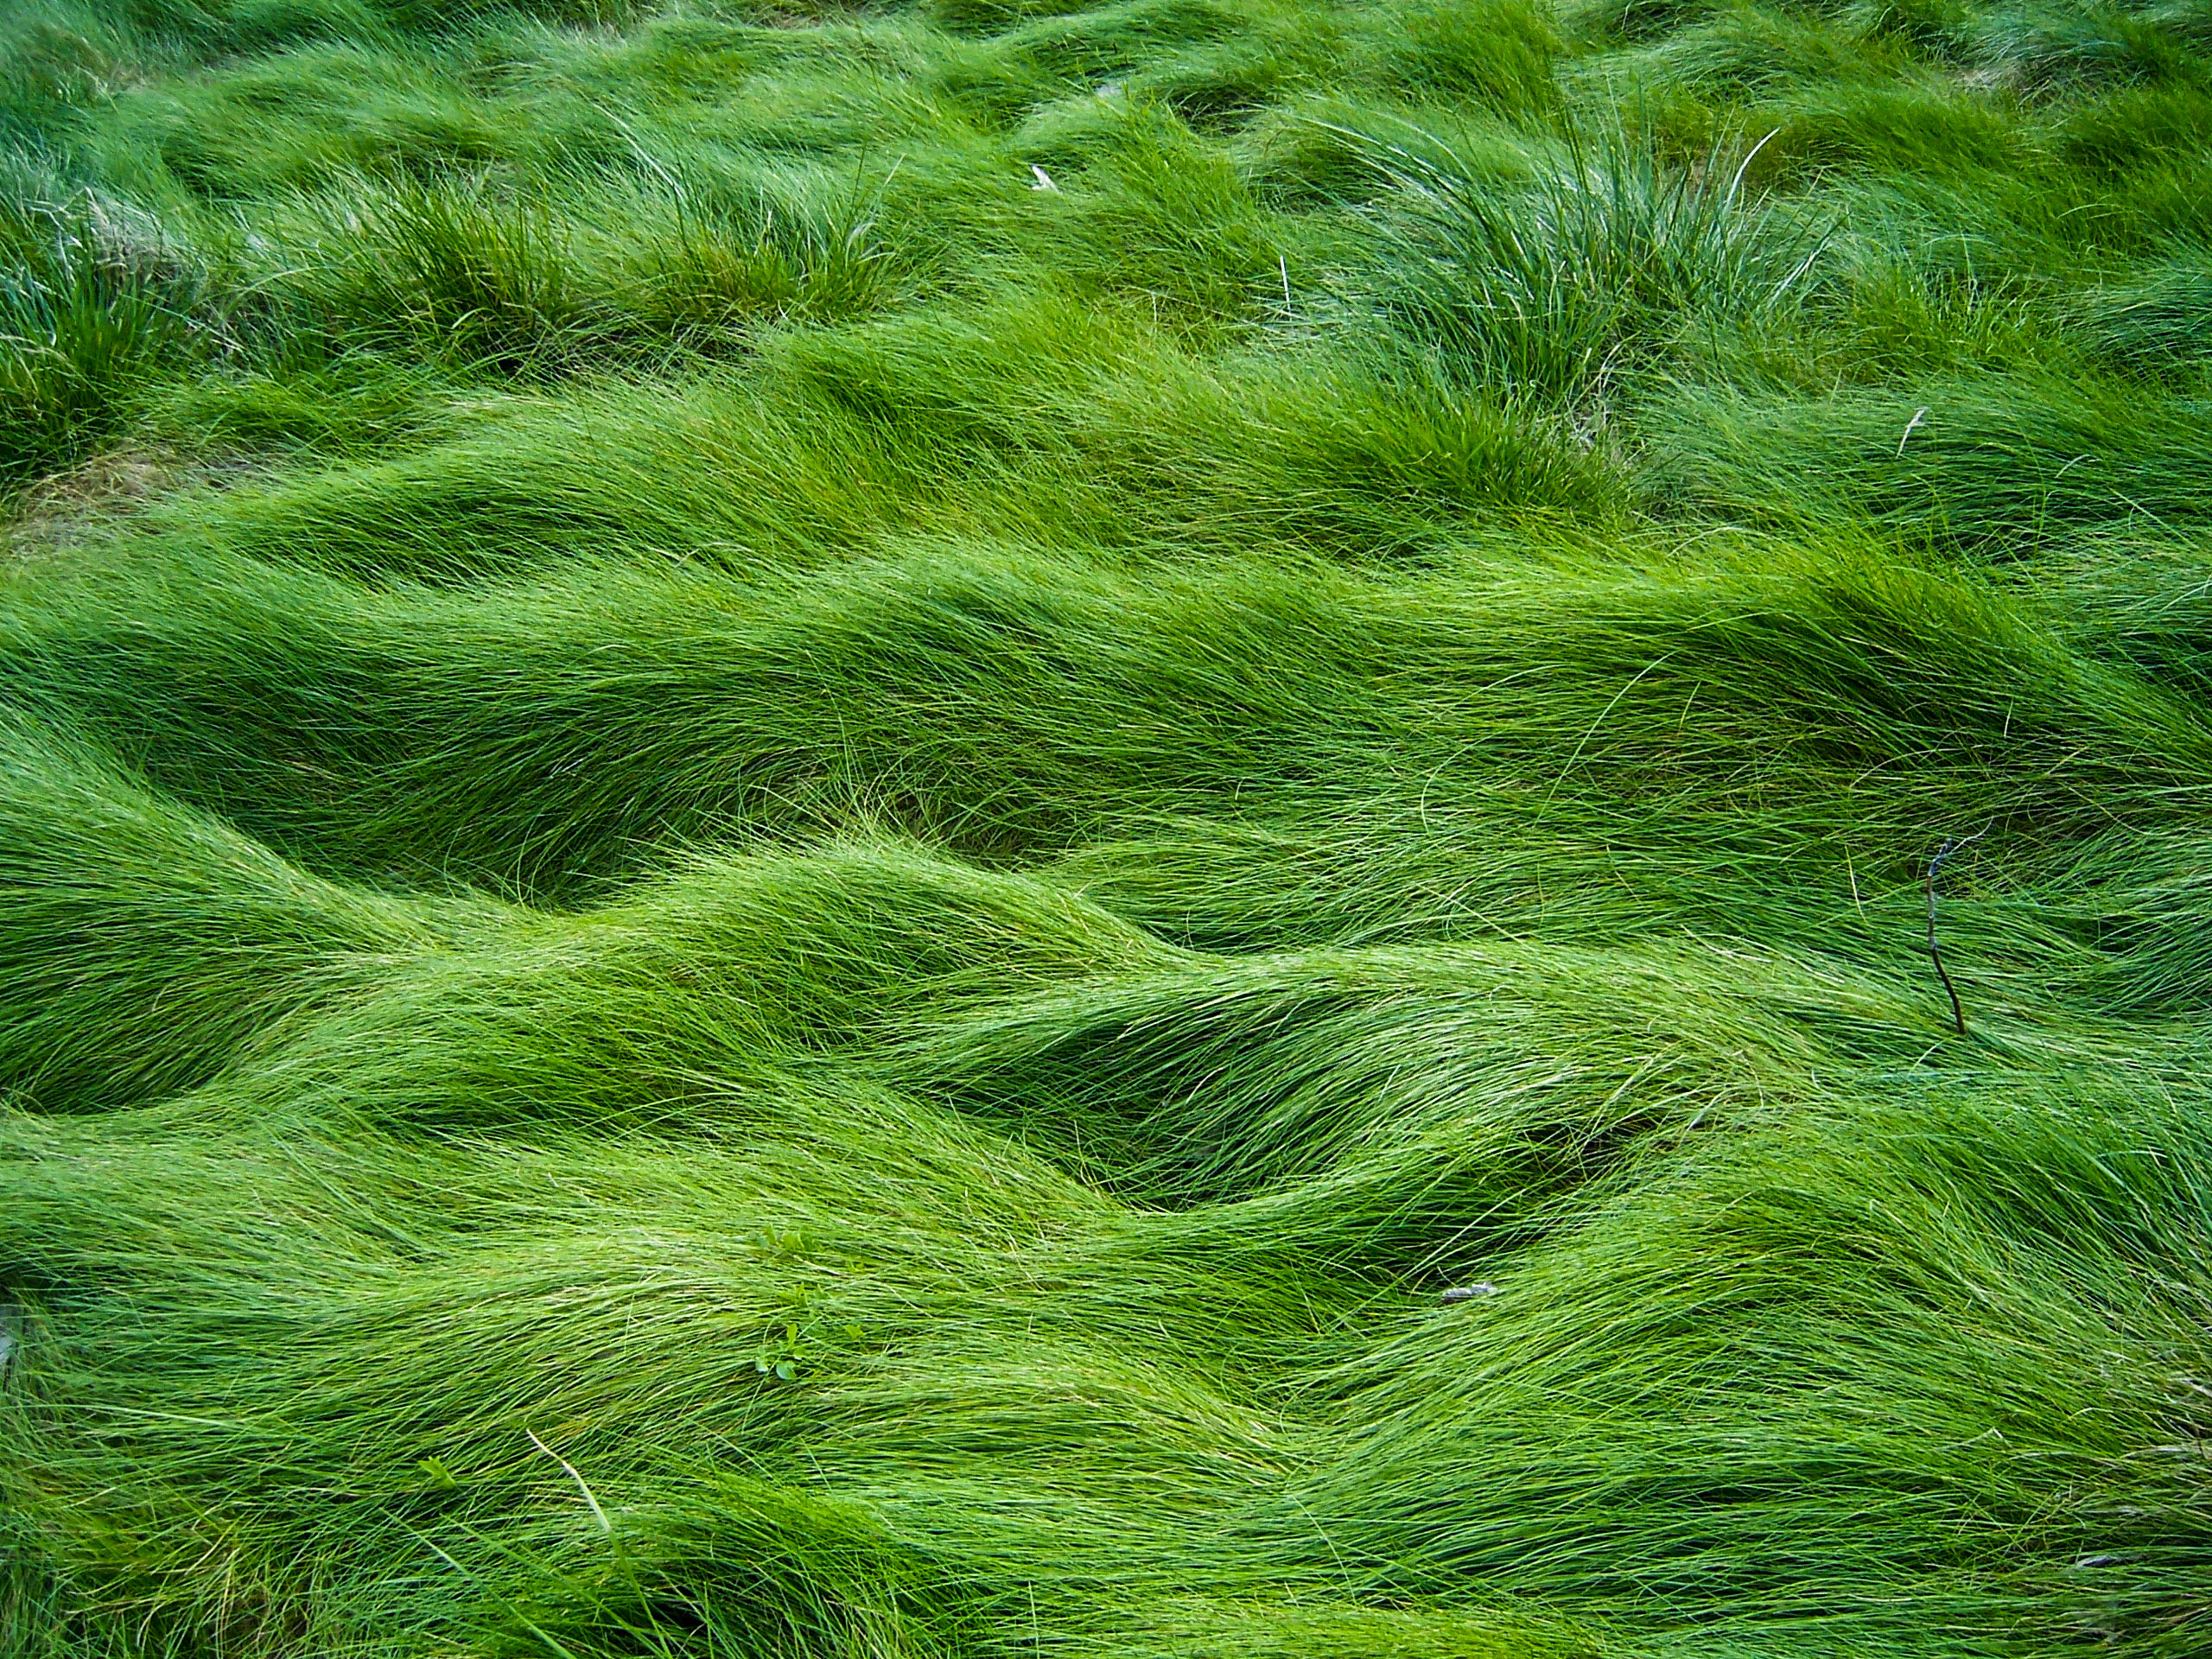 Зеленый юнец. Цвет Грасс Грин. Grass Green ягель. Зеленые водоросли ульфоциевые. Зеленая трава.